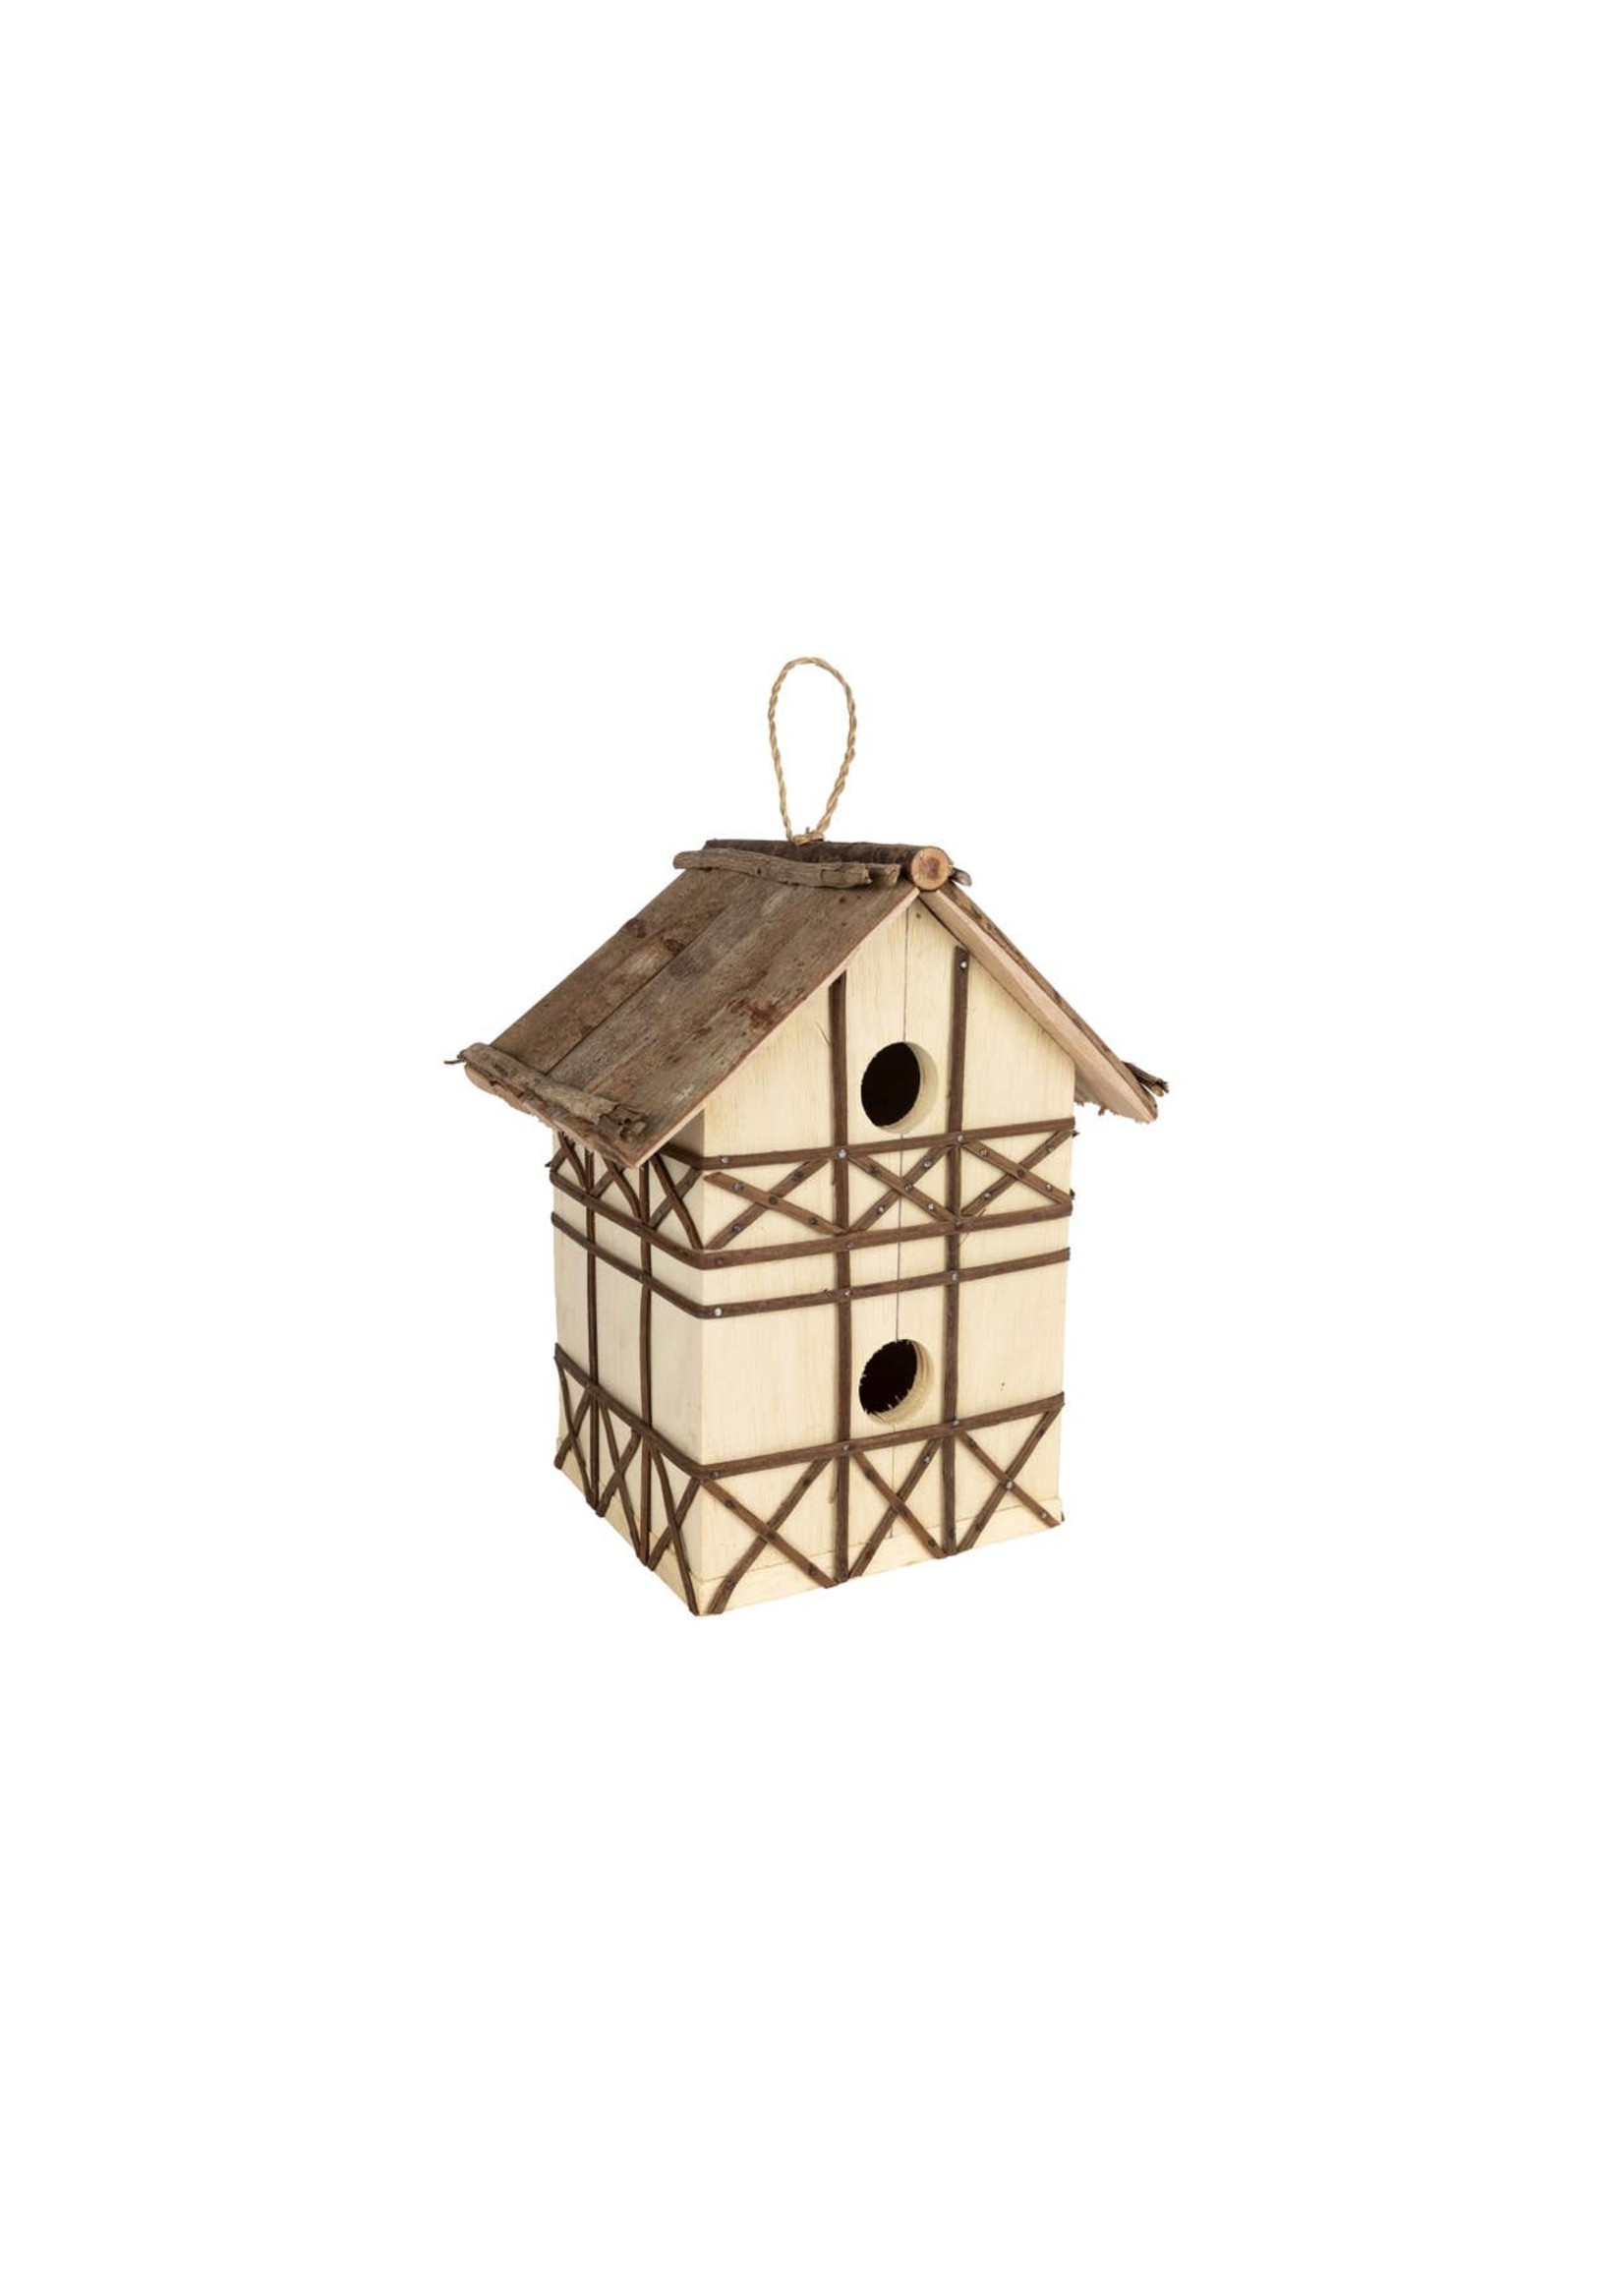 Birdhouse - Tudor